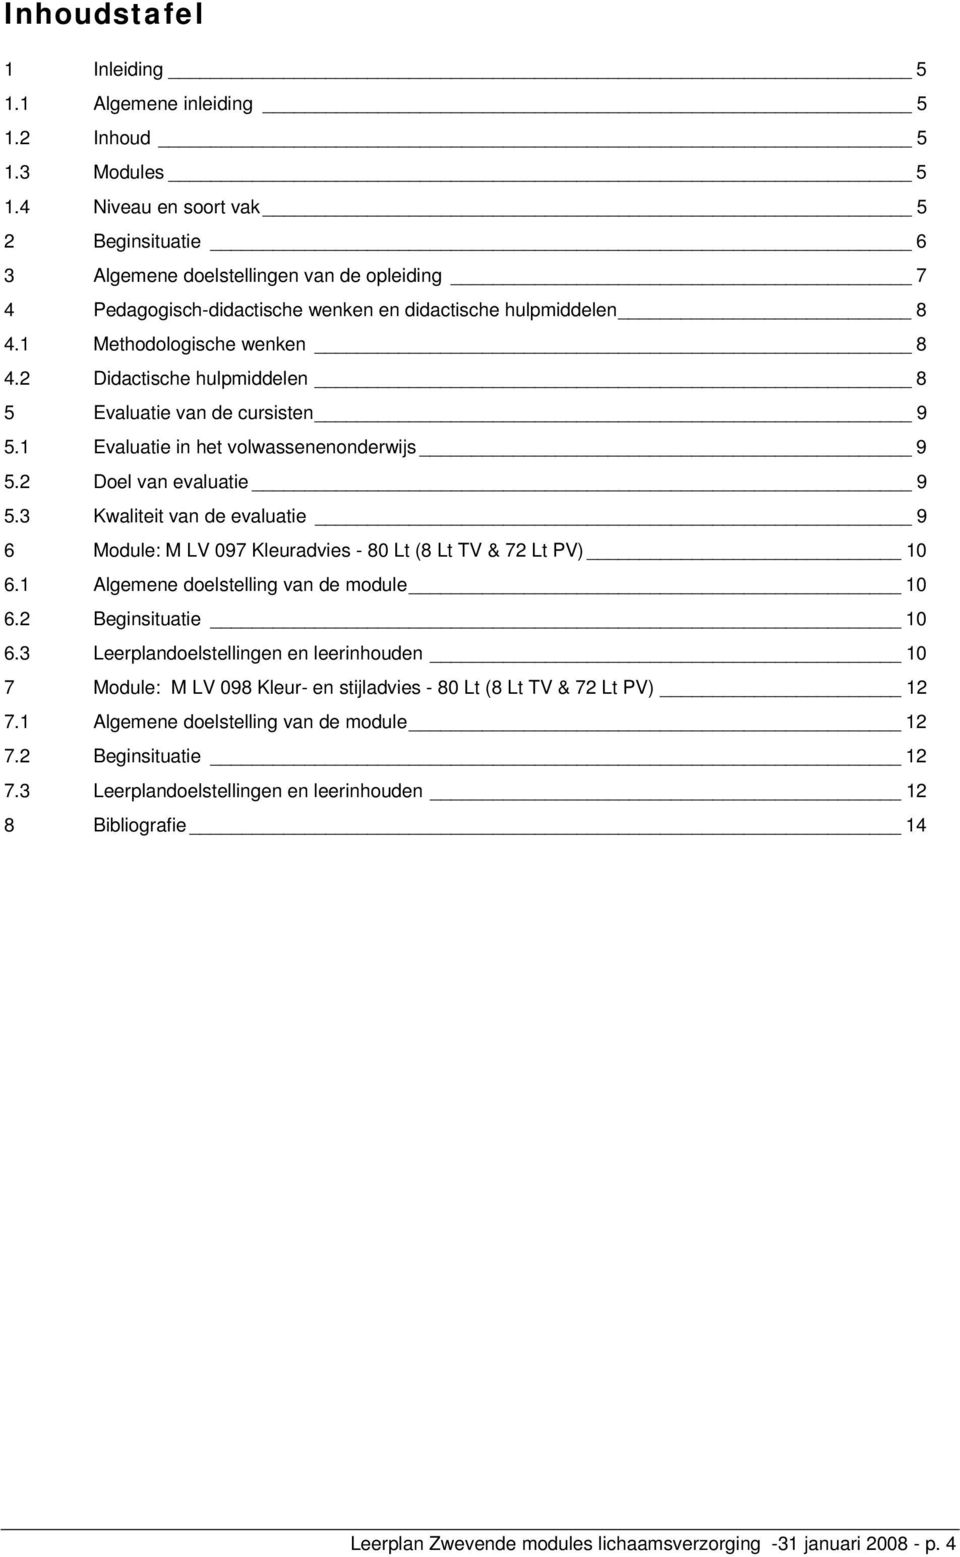 2 Didactische hulpmiddelen 8 5 Evaluatie van de cursisten 9 5.1 Evaluatie in het volwassenenonderwijs 9 5.2 Doel van evaluatie 9 5.